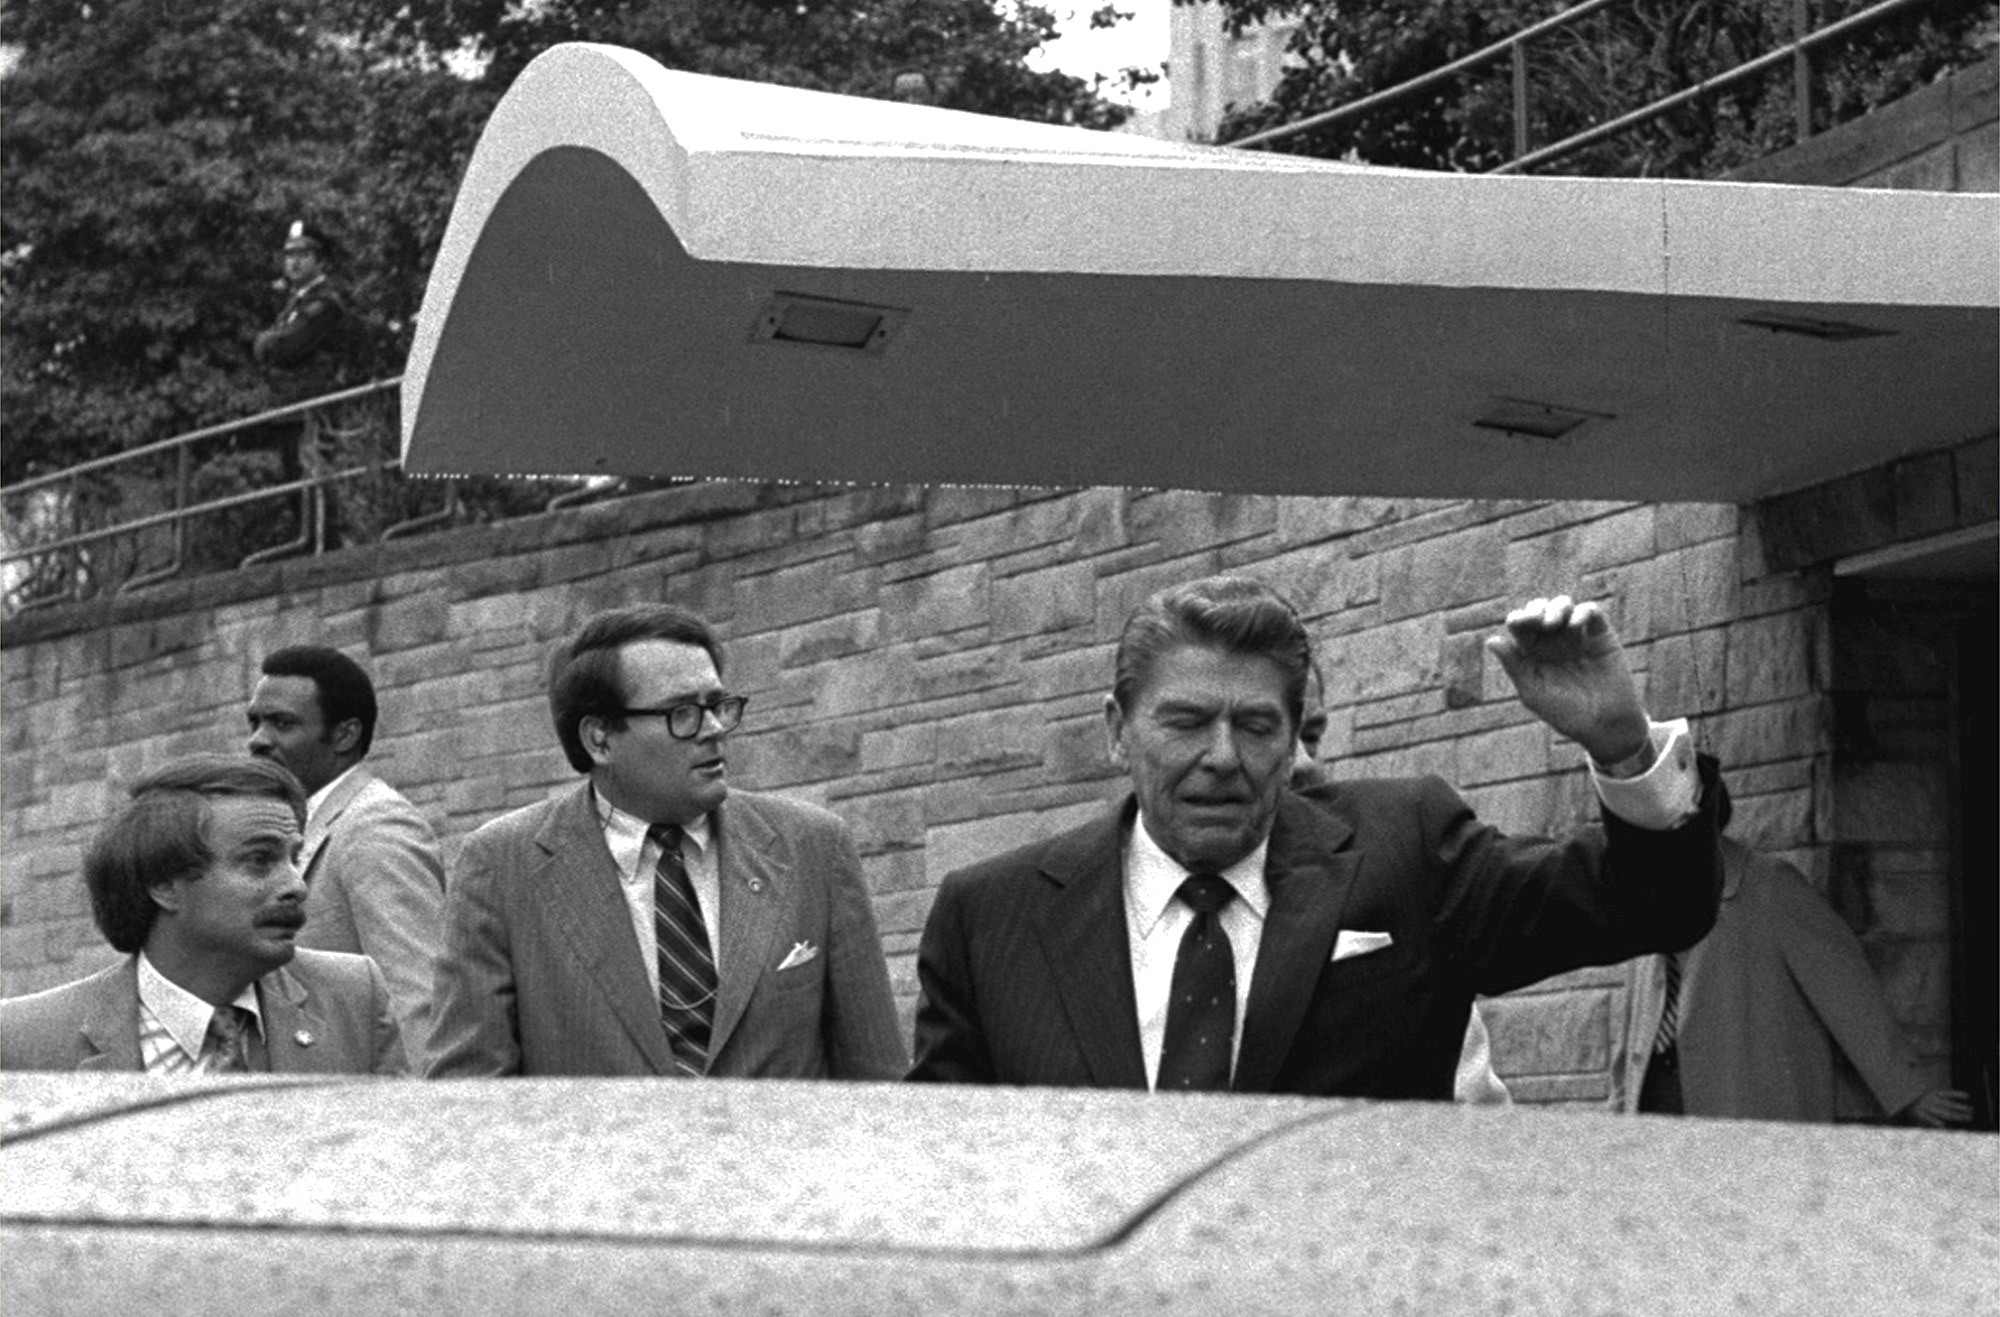 President Ronald Reagan assassination attempt 1981